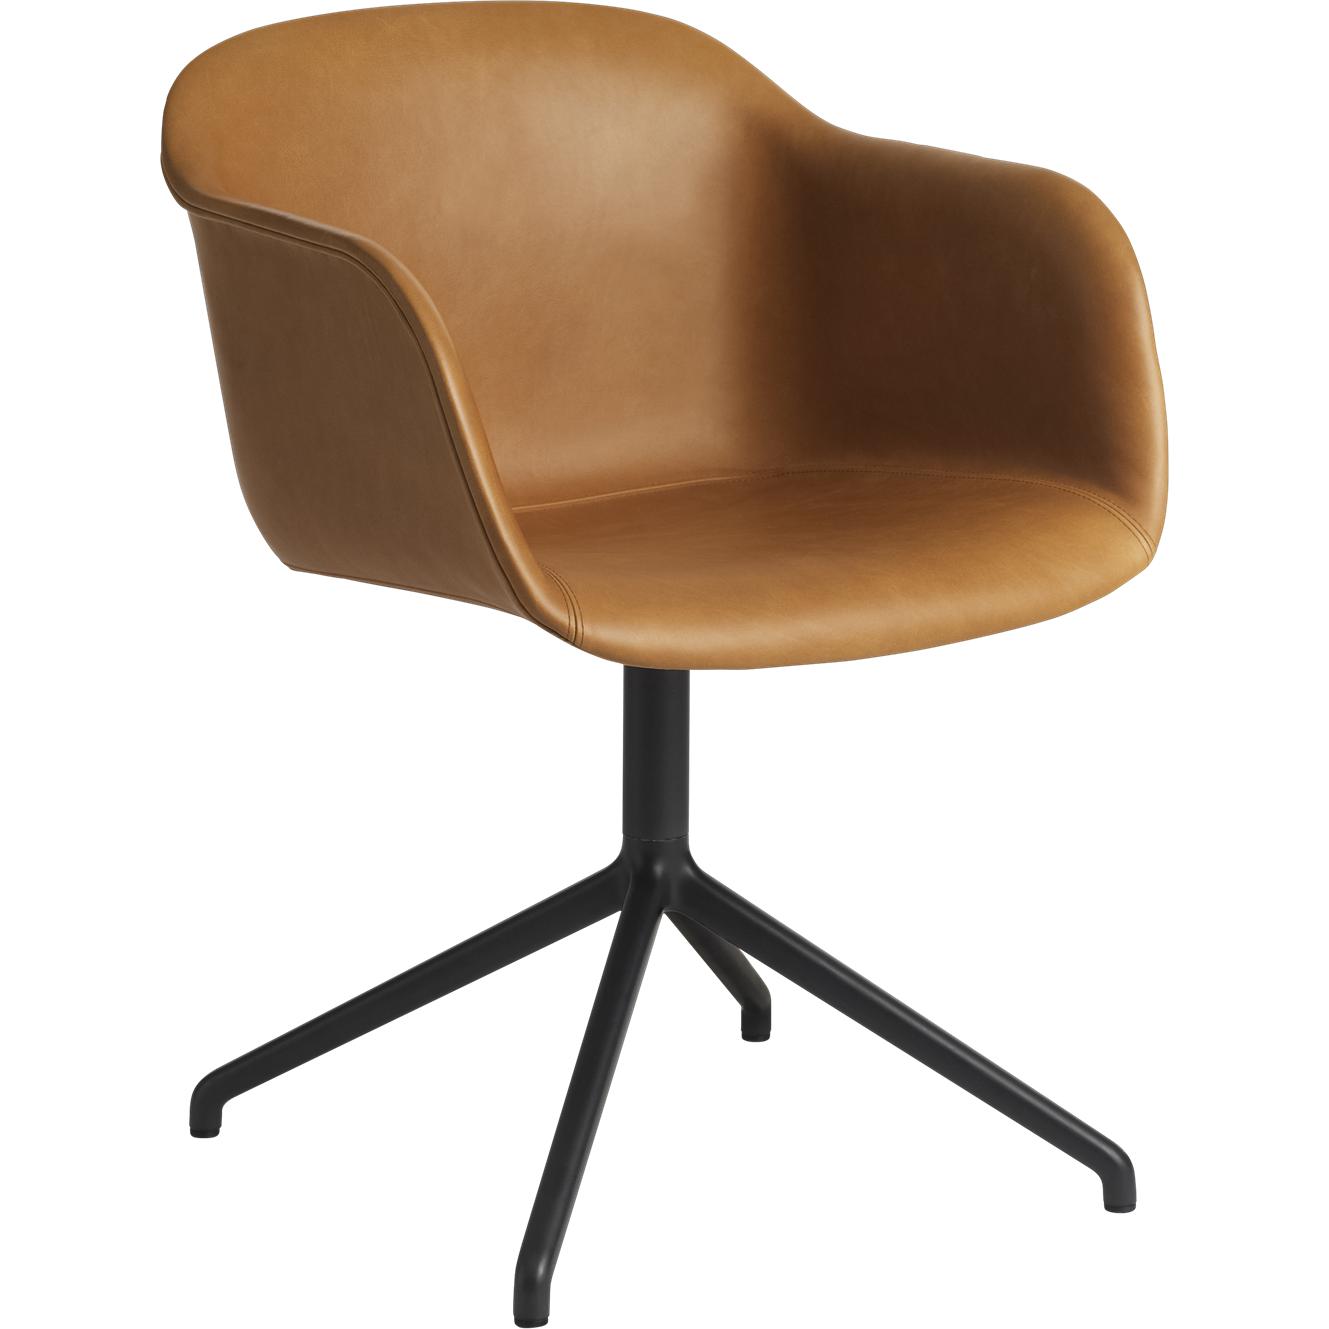 Base de pivot de fauteuil Muuto Fiber, Affine Seat en cuir, cognac marron